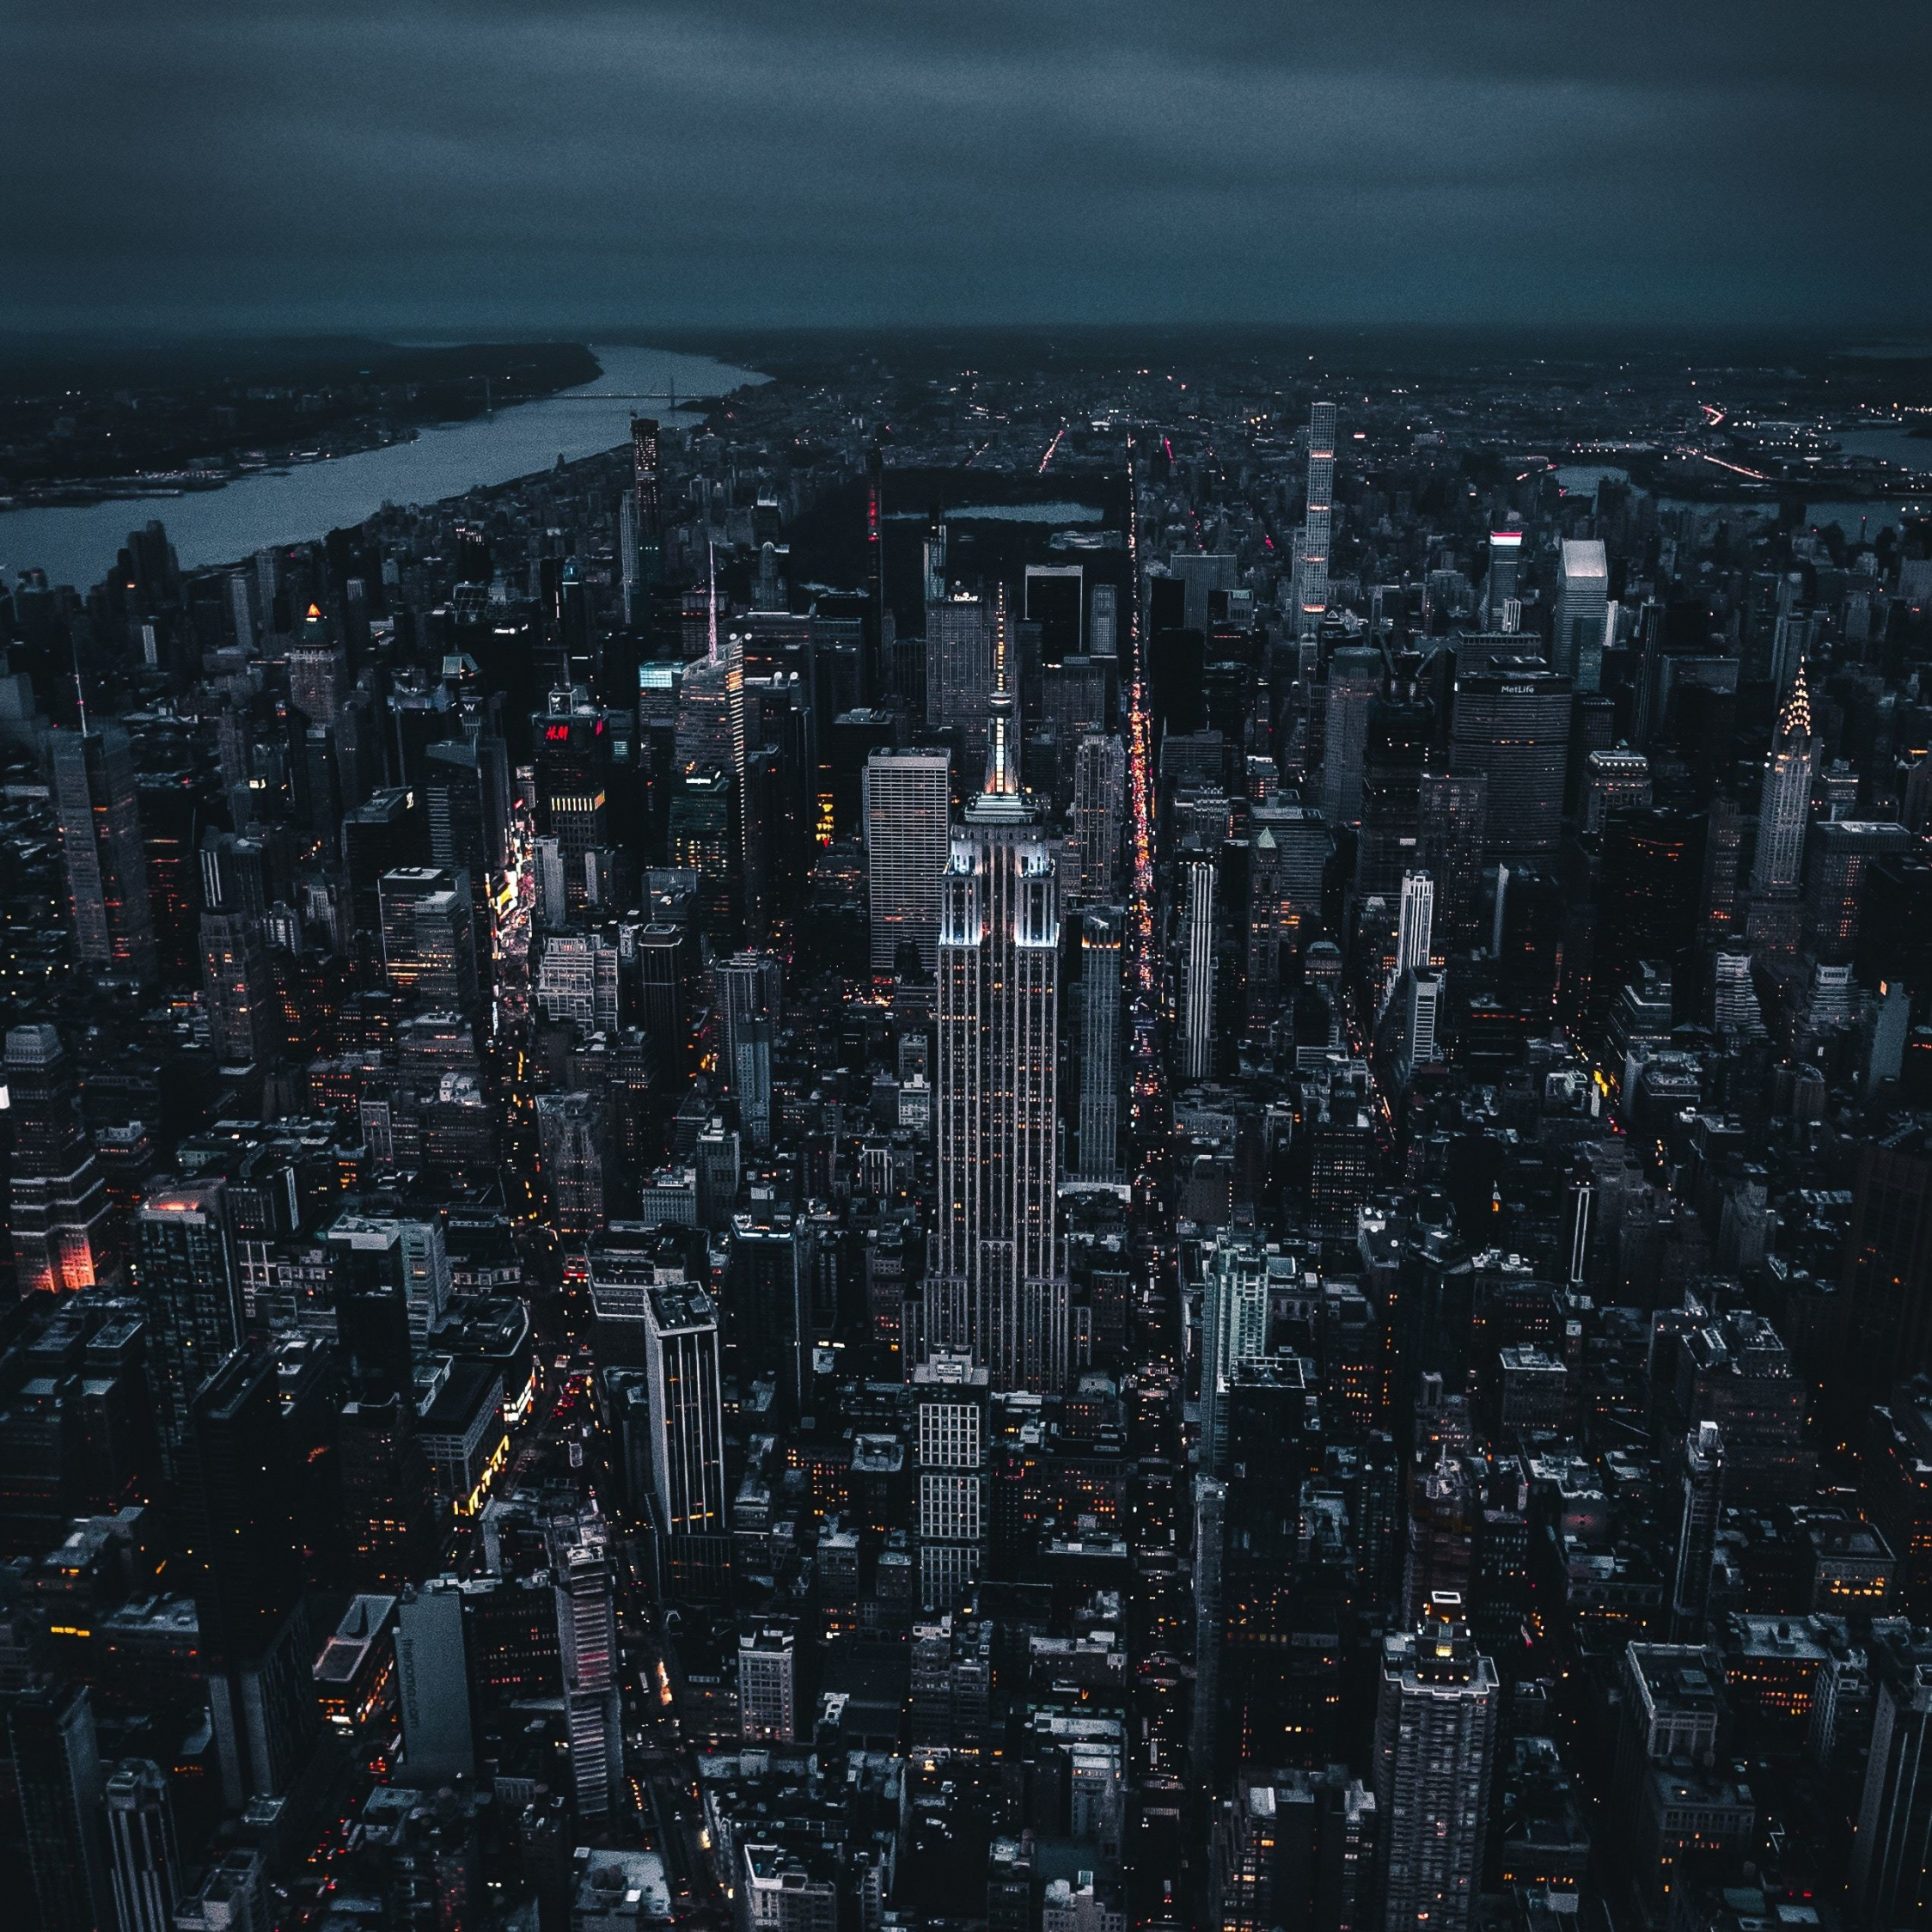 Khám phá vẻ đẹp của thành phố New York tuyệt vời vào ban đêm với hình nền đen địa chất hấp dẫn này. Quang cảnh sống động của đèn phố cùng với bầu trời đen tối đem đến một không gian độc đáo, tuyệt đẹp cho màn hình của bạn. Hãy mãn nhãn với chất lượng hình ảnh cao, không lưu hay giật lag.